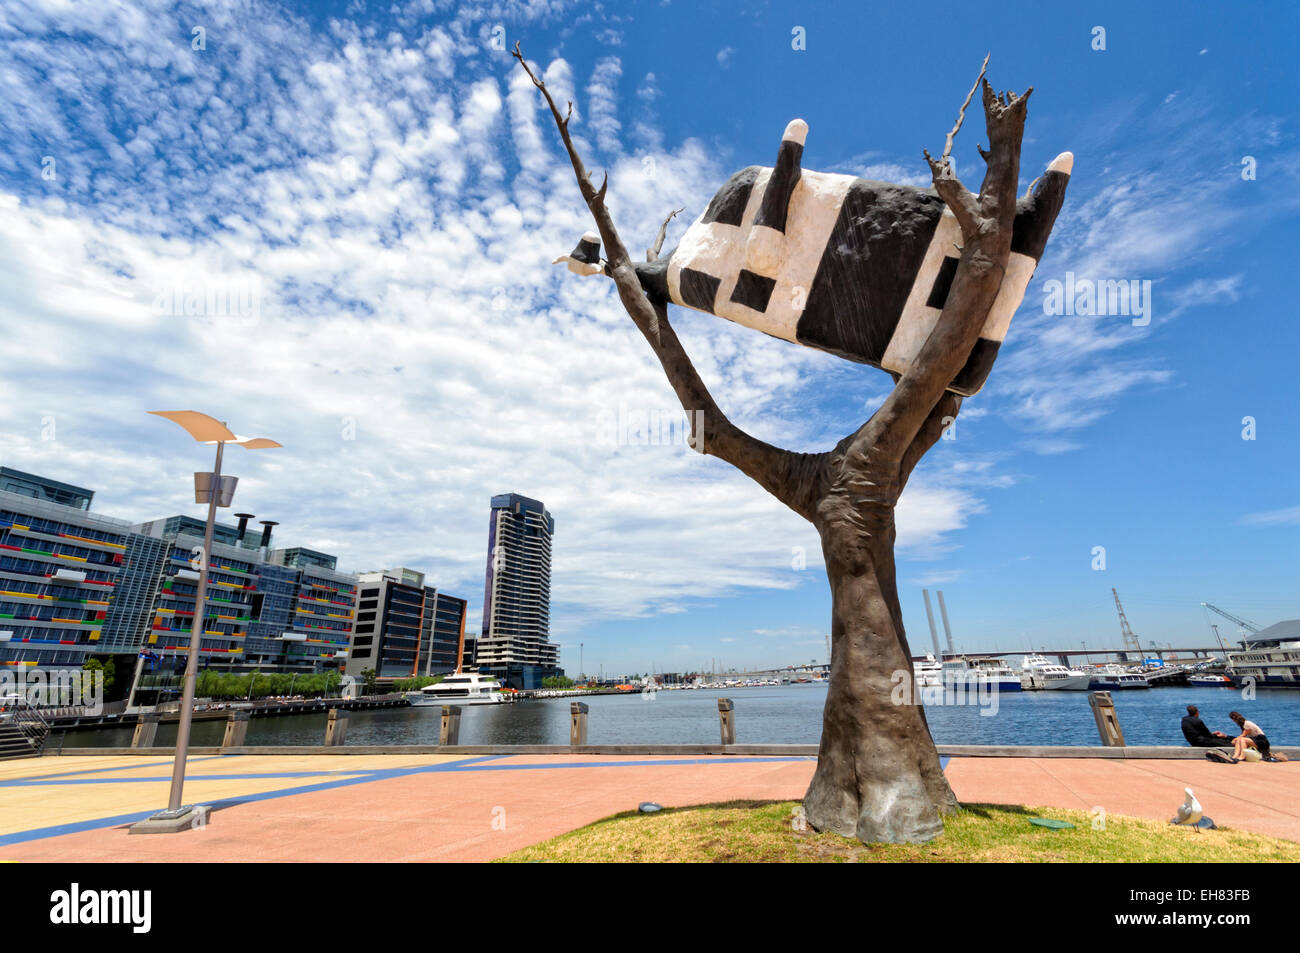 Escultura surrealista de una vaca muerta pegada a un árbol - el arte público en Melbourne Docklands, Australia, una zona de regeneración urbana. Foto de stock